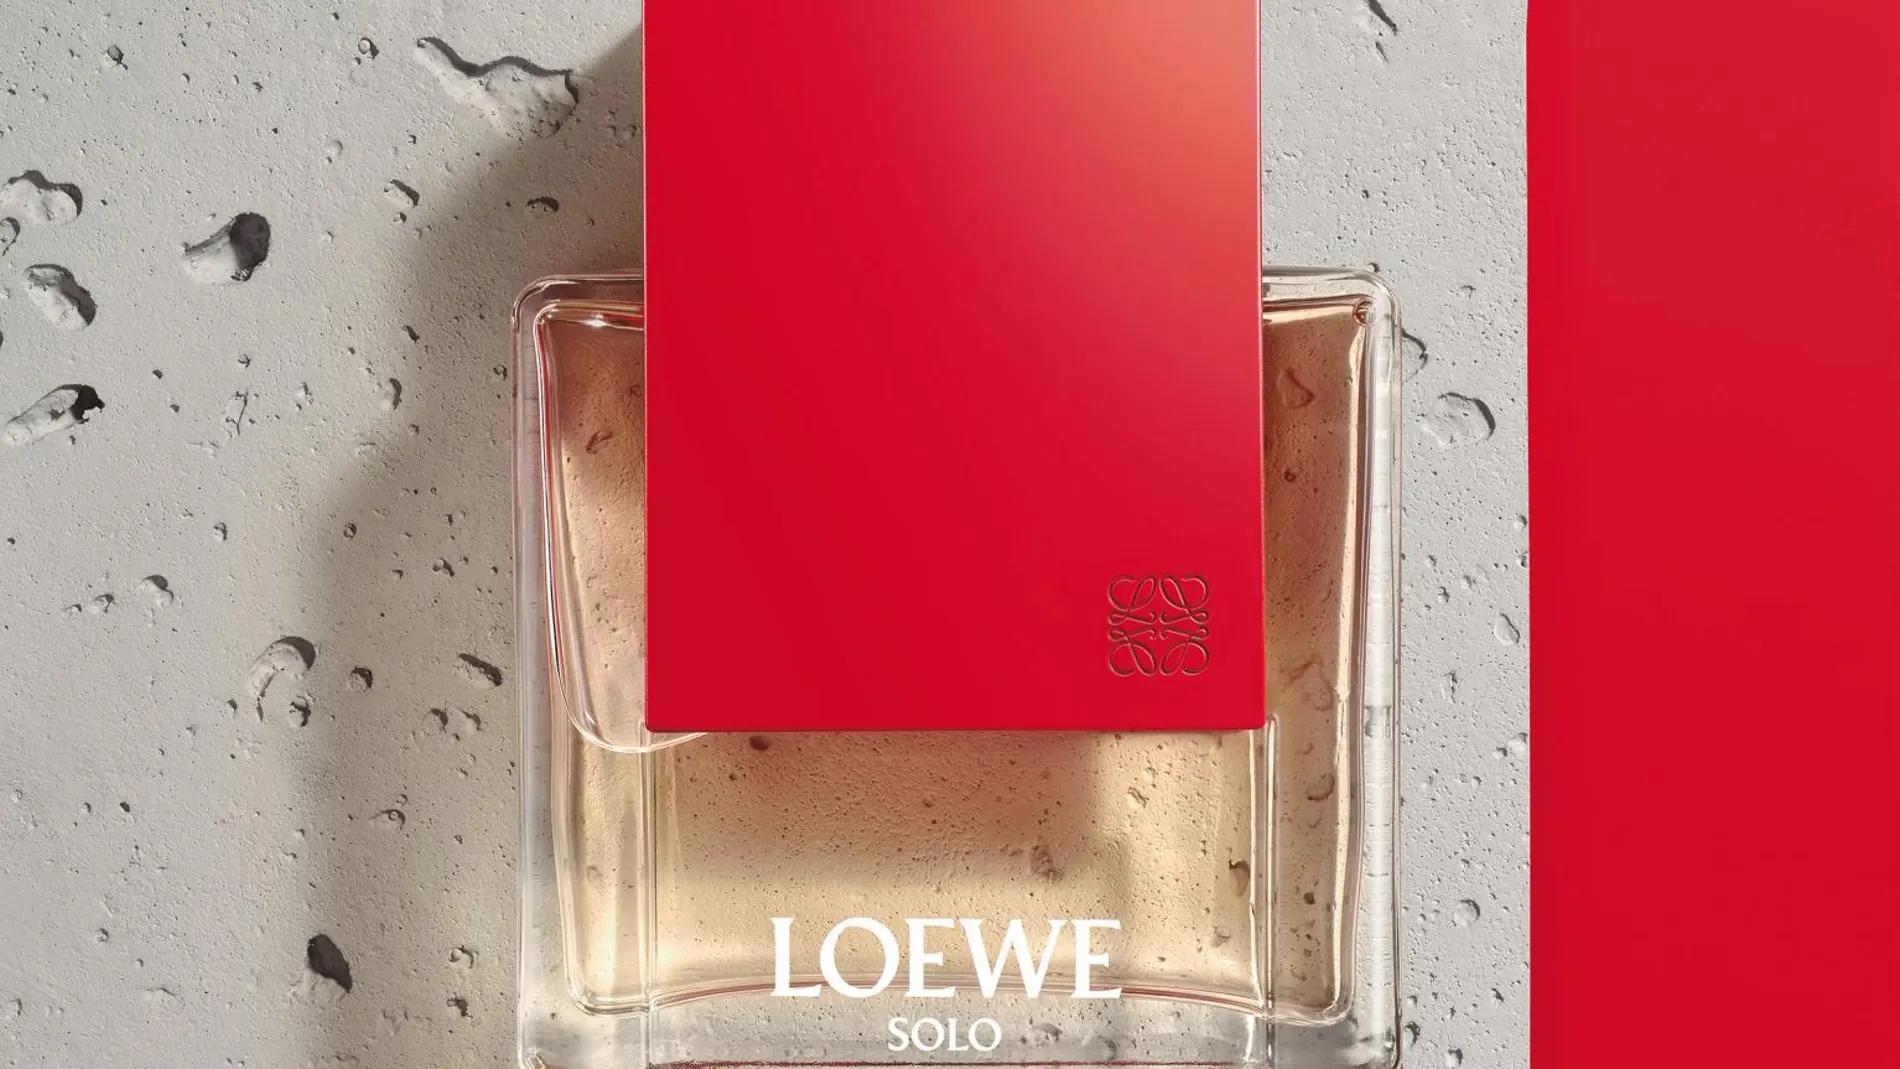 Loewe se complace en anunciar el lanzamiento de Loewe Solo Ella, la nueva fragancia femenina basada en el poder de la actitud